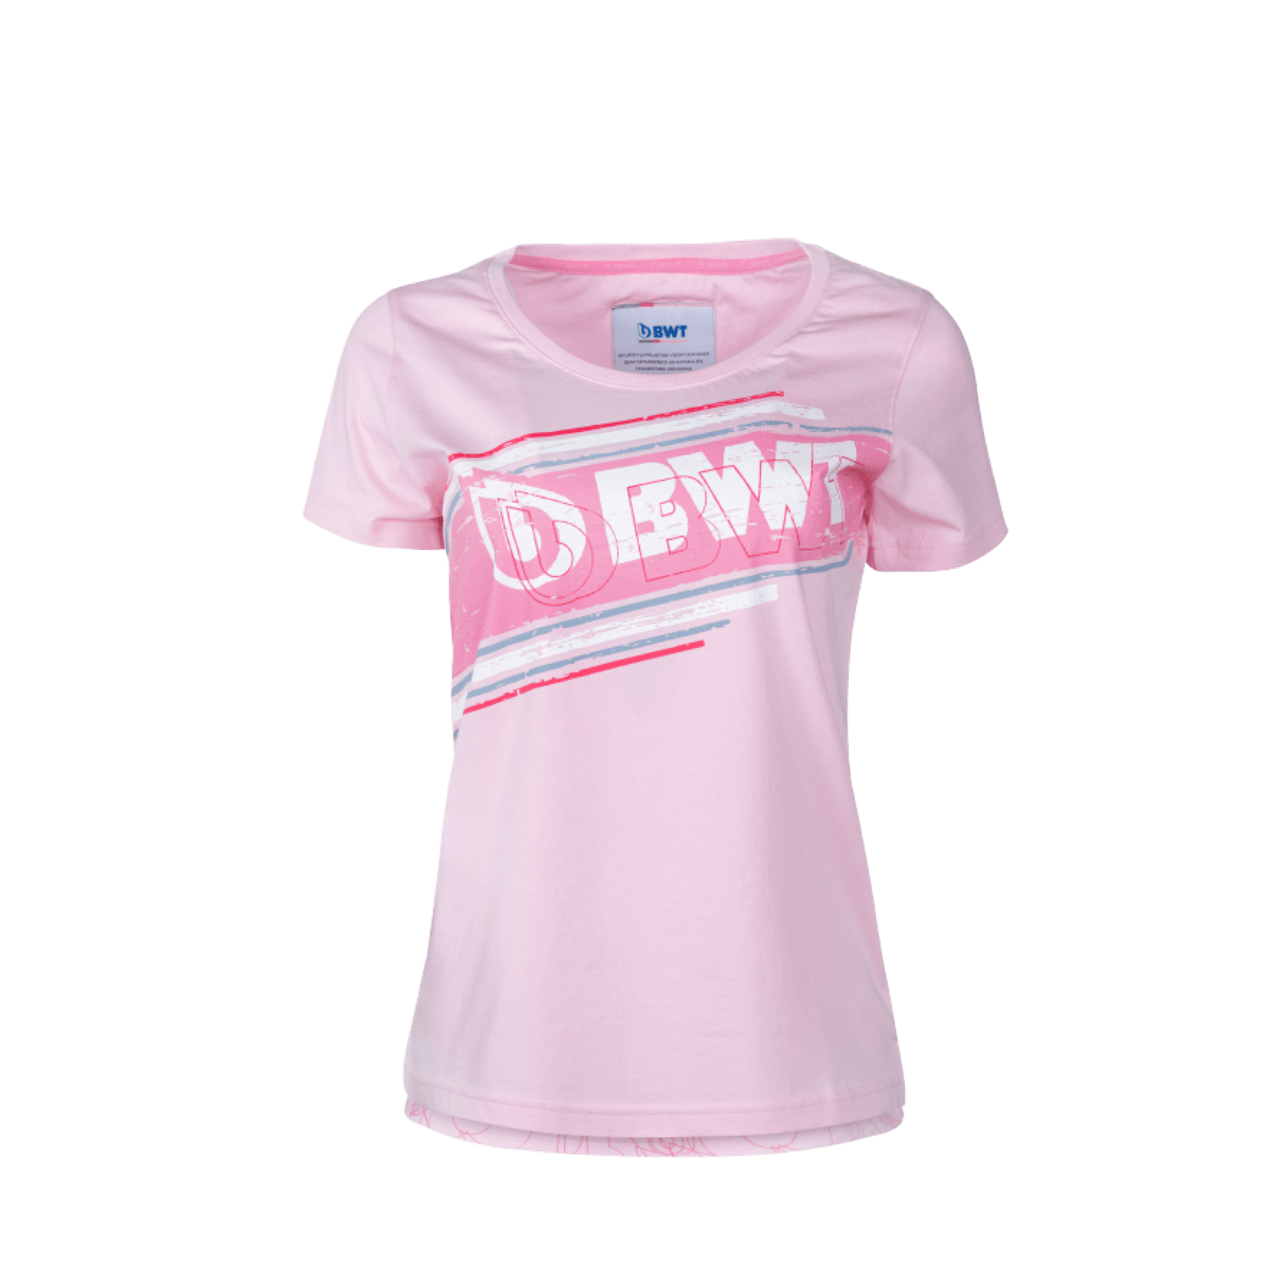 BWT Lifestyle T-Shirt Damen pink mit weißem BWT Logo auf pinkem Hintergrund